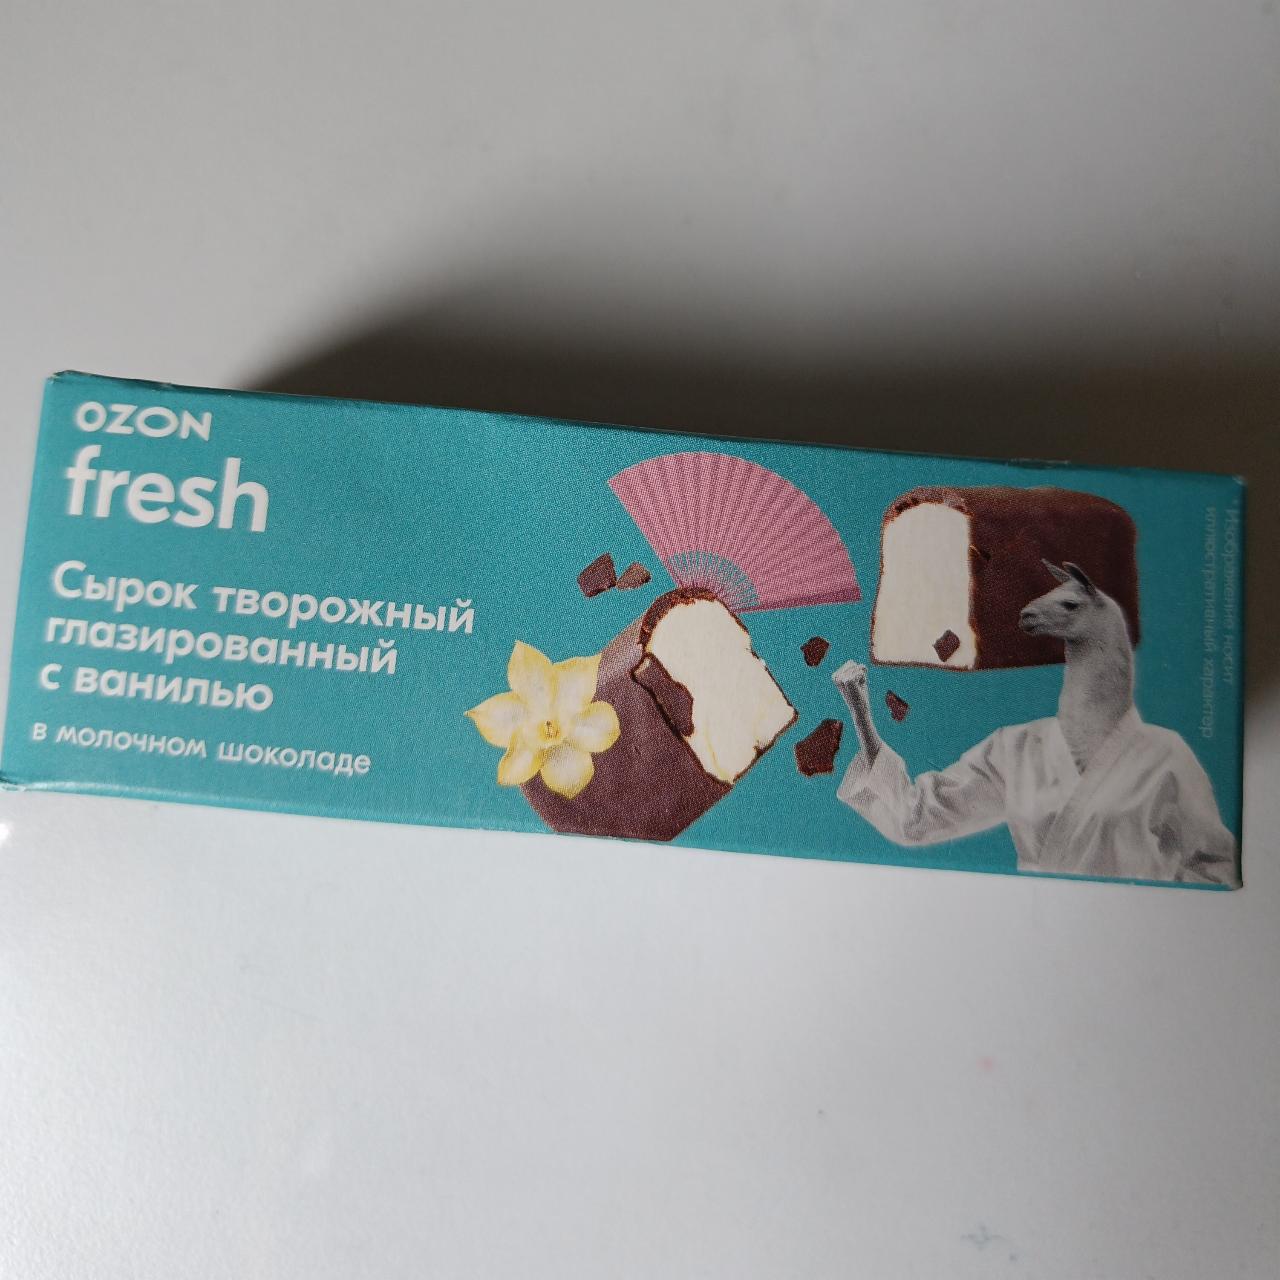 Фото - Сырок творожный глазированный с ванилью в молочном шоколаде Ozon fresh